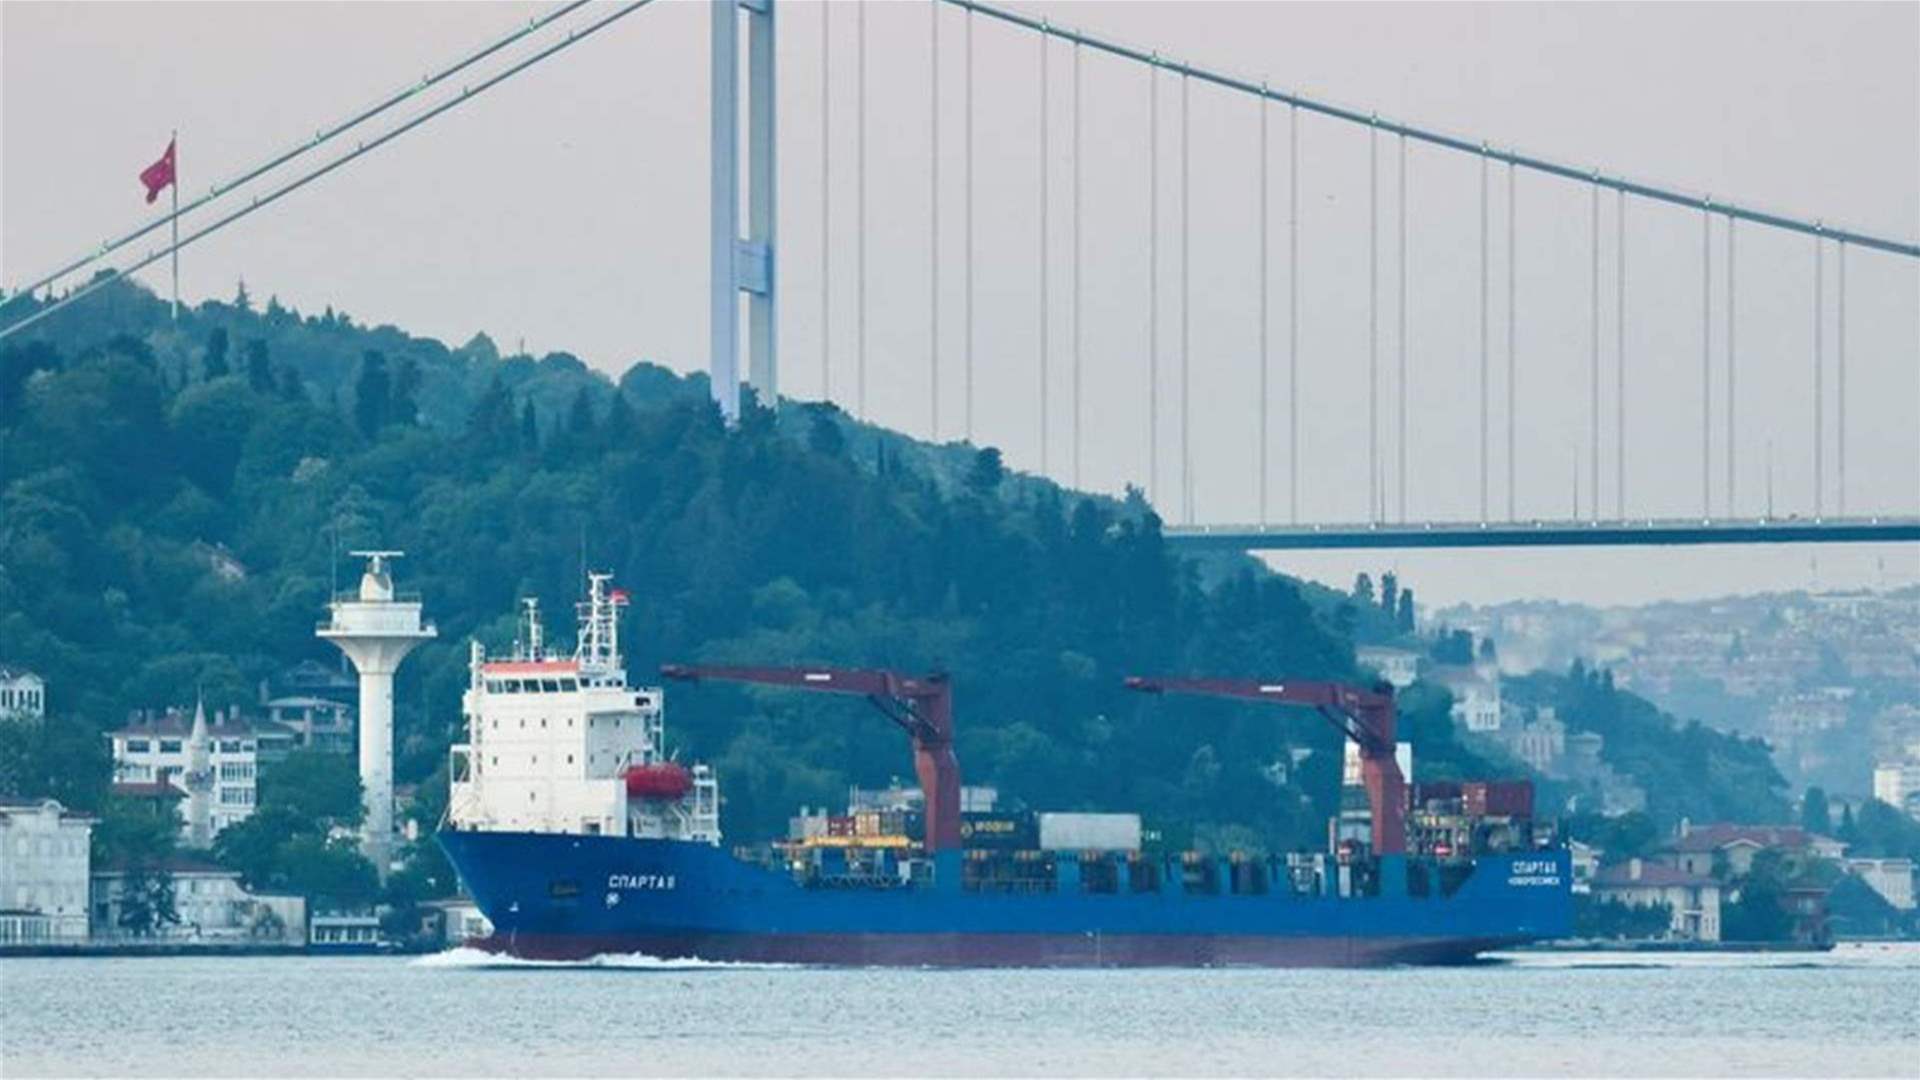 تعليق حركة المرور في مضيق البوسفور التركي بسبب مشكلة في قطر سفينة